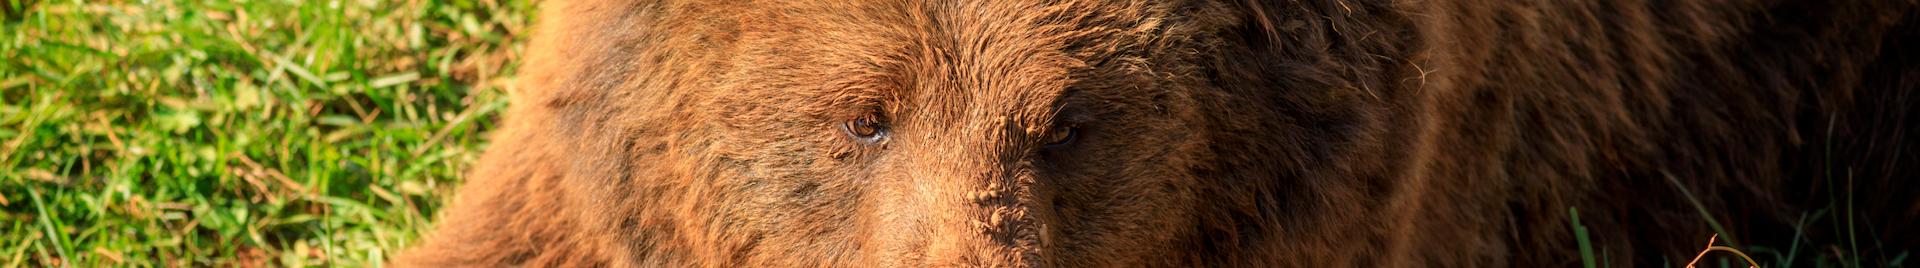 cantabarian bear close-up